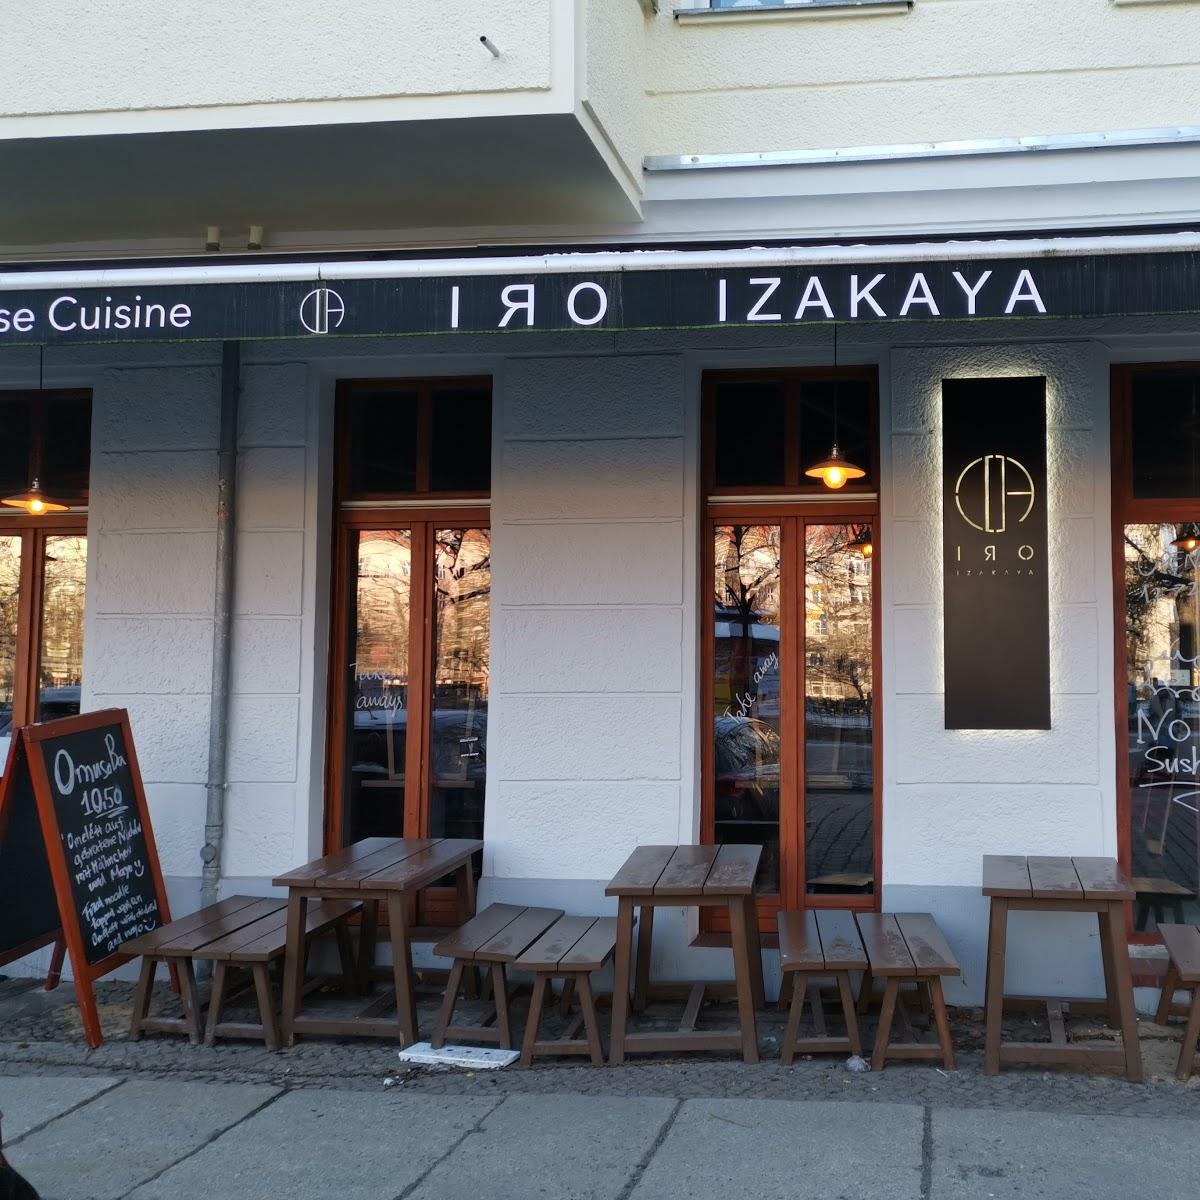 Restaurant "Iro Izakaya" in Berlin